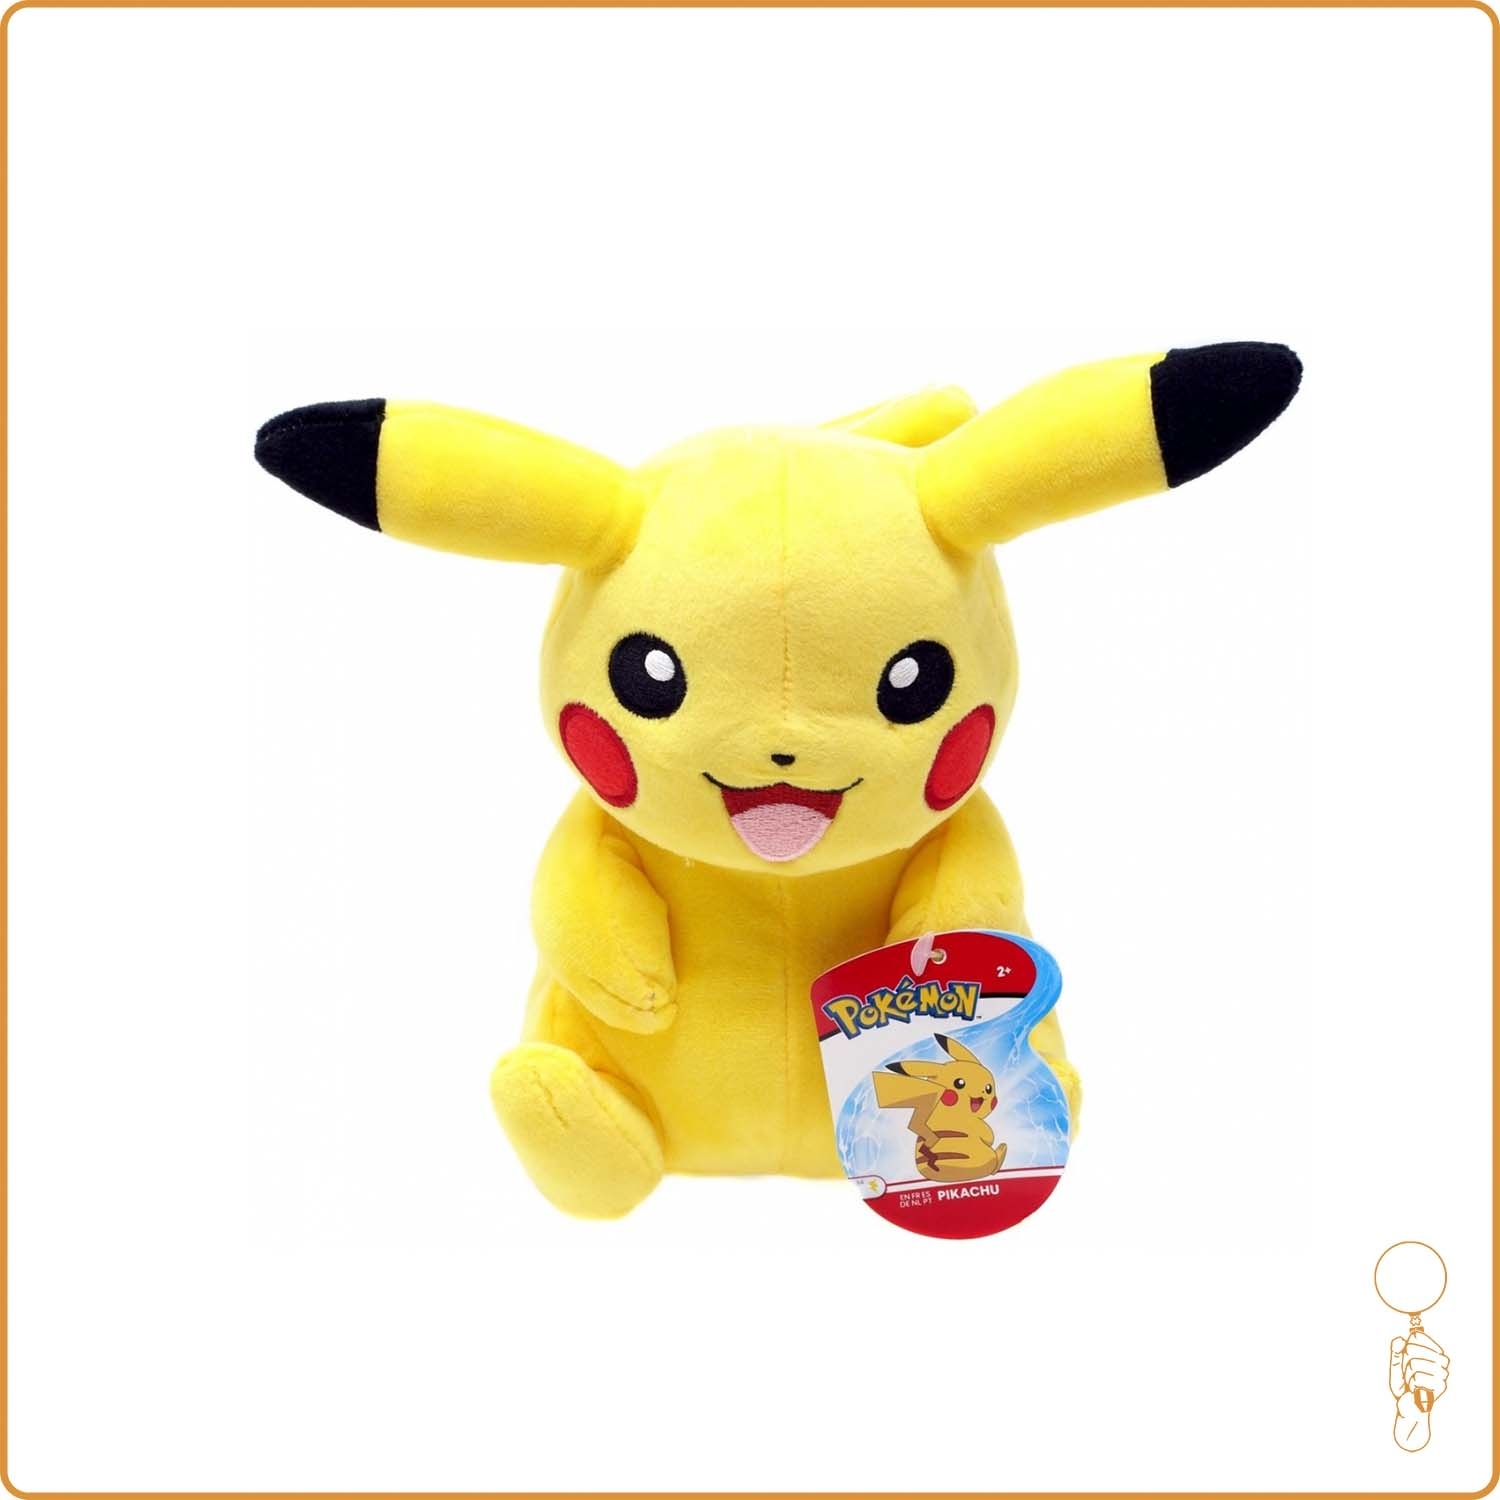 Peluche Pokémon des Fêtes de 20 cm - Pikachu - Notre exclusivité